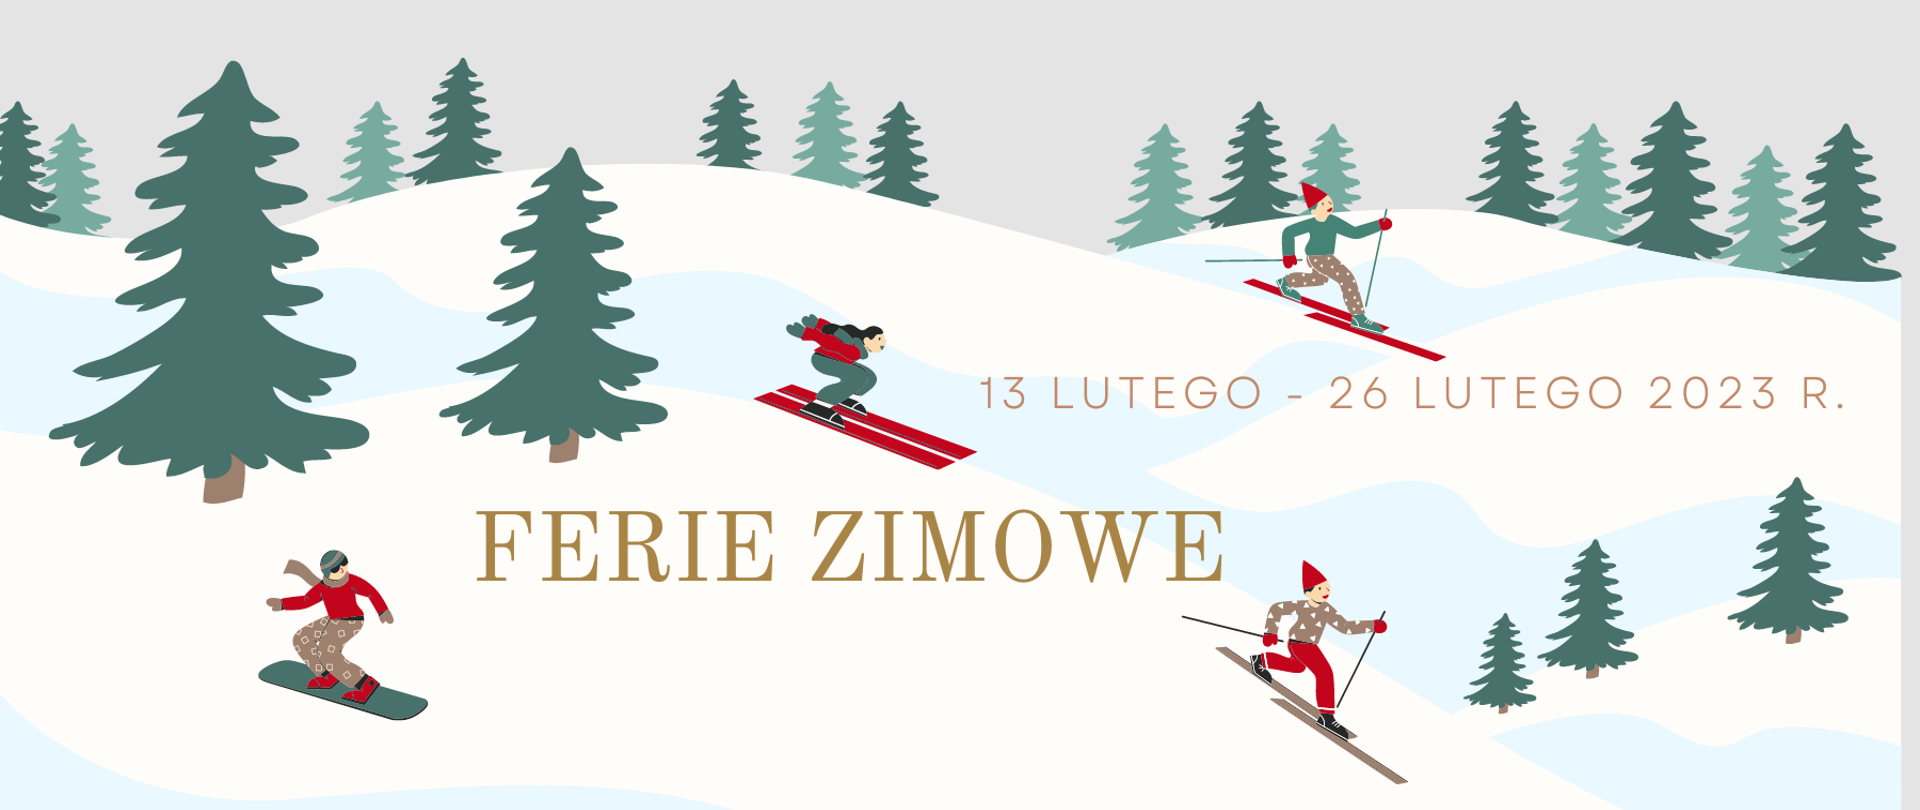 Plakat z informacją o feriach zimowych. Plakat przedstawia na szarym tle widok pagórków w biało-niebieskim kolorze, a na nich 4 ikony narciarzy oraz ikony świerków. W części środkowej plakatu tekst: „Ferie zimowe 13 lutego- 26 lutego 2023 r.”